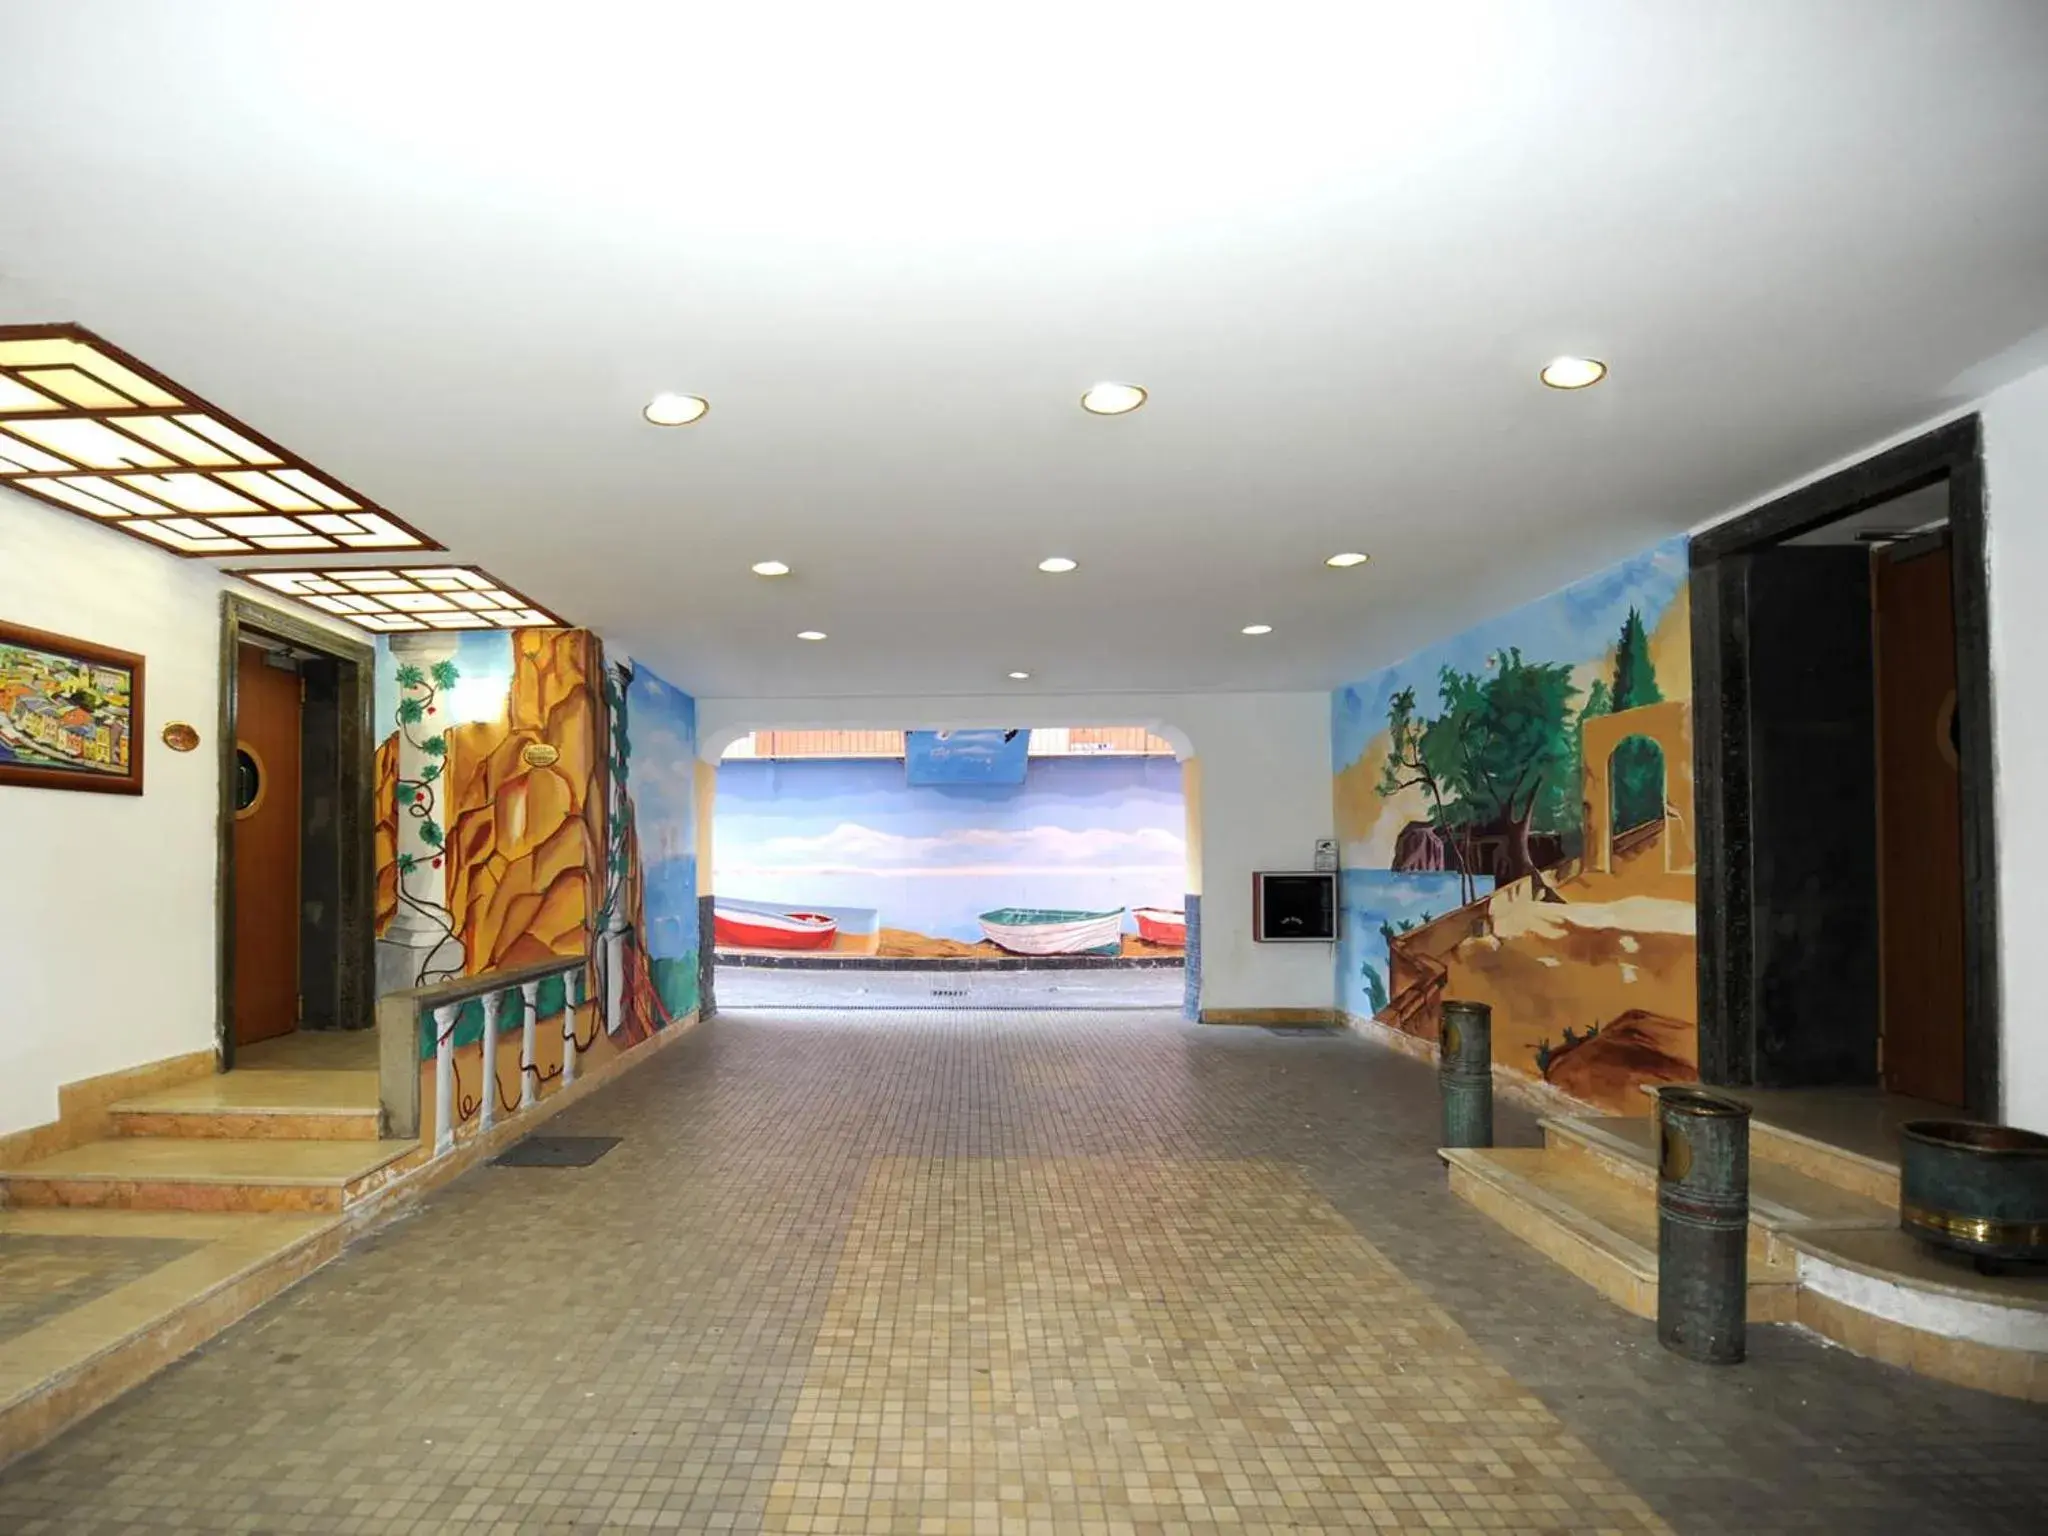 Lobby or reception in Buono Hotel